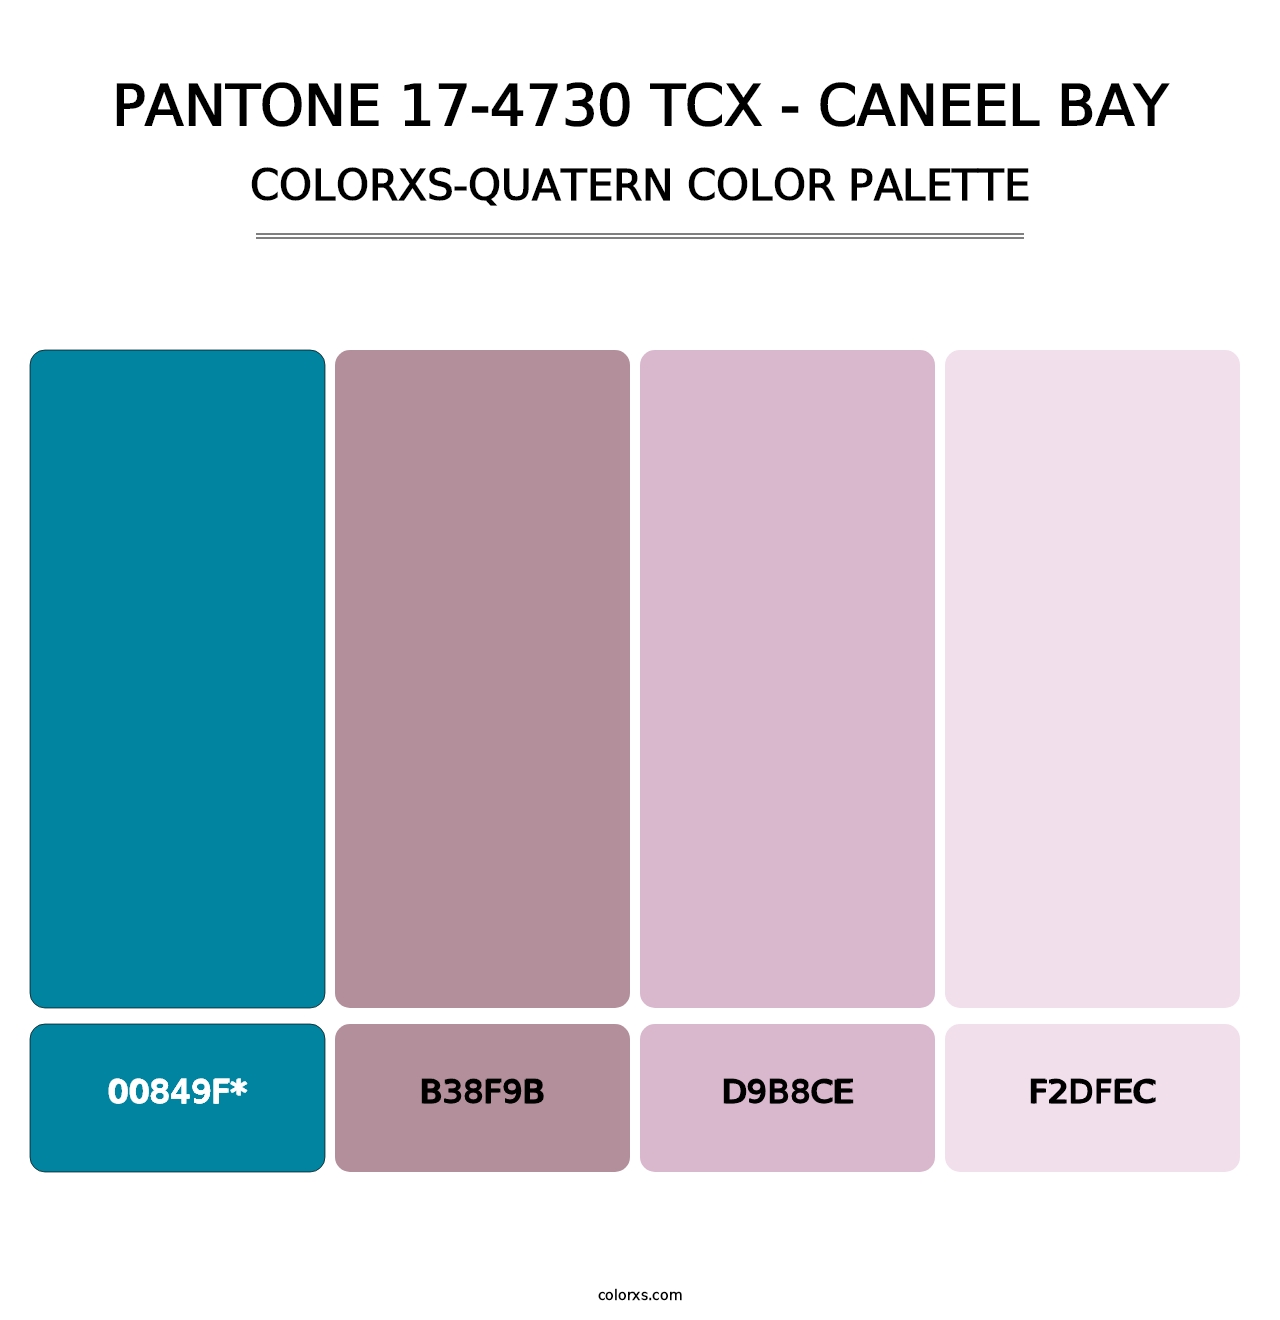 PANTONE 17-4730 TCX - Caneel Bay - Colorxs Quatern Palette